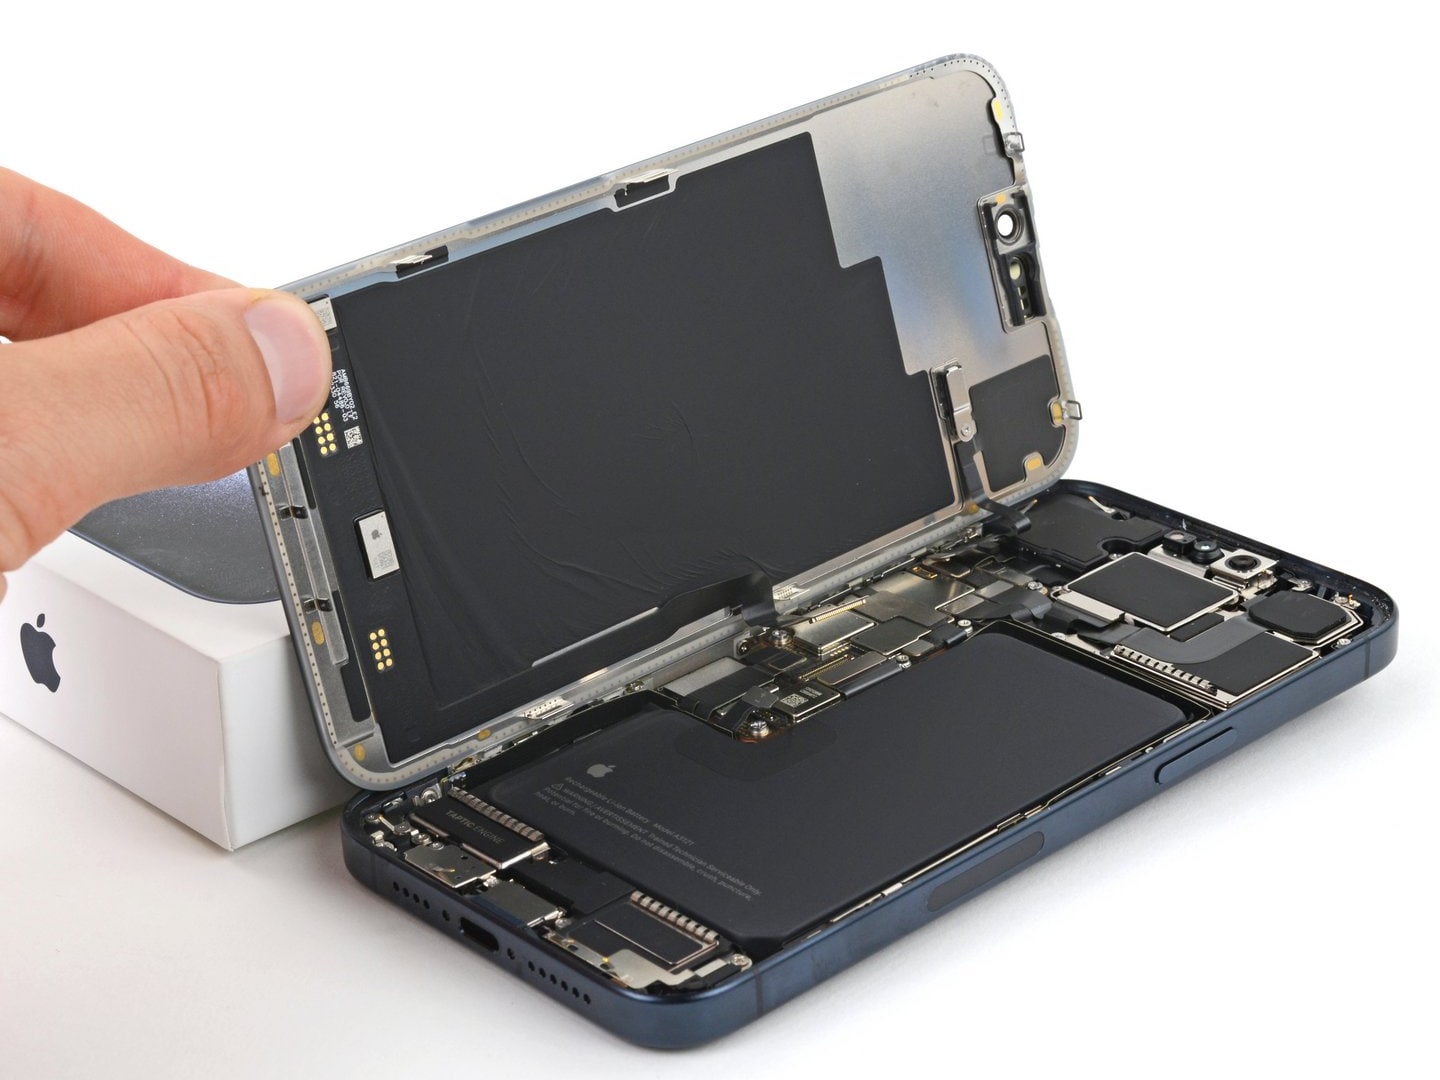 Baterías de acero inoxidable, mayor duración y reparabilidad en los iPhone